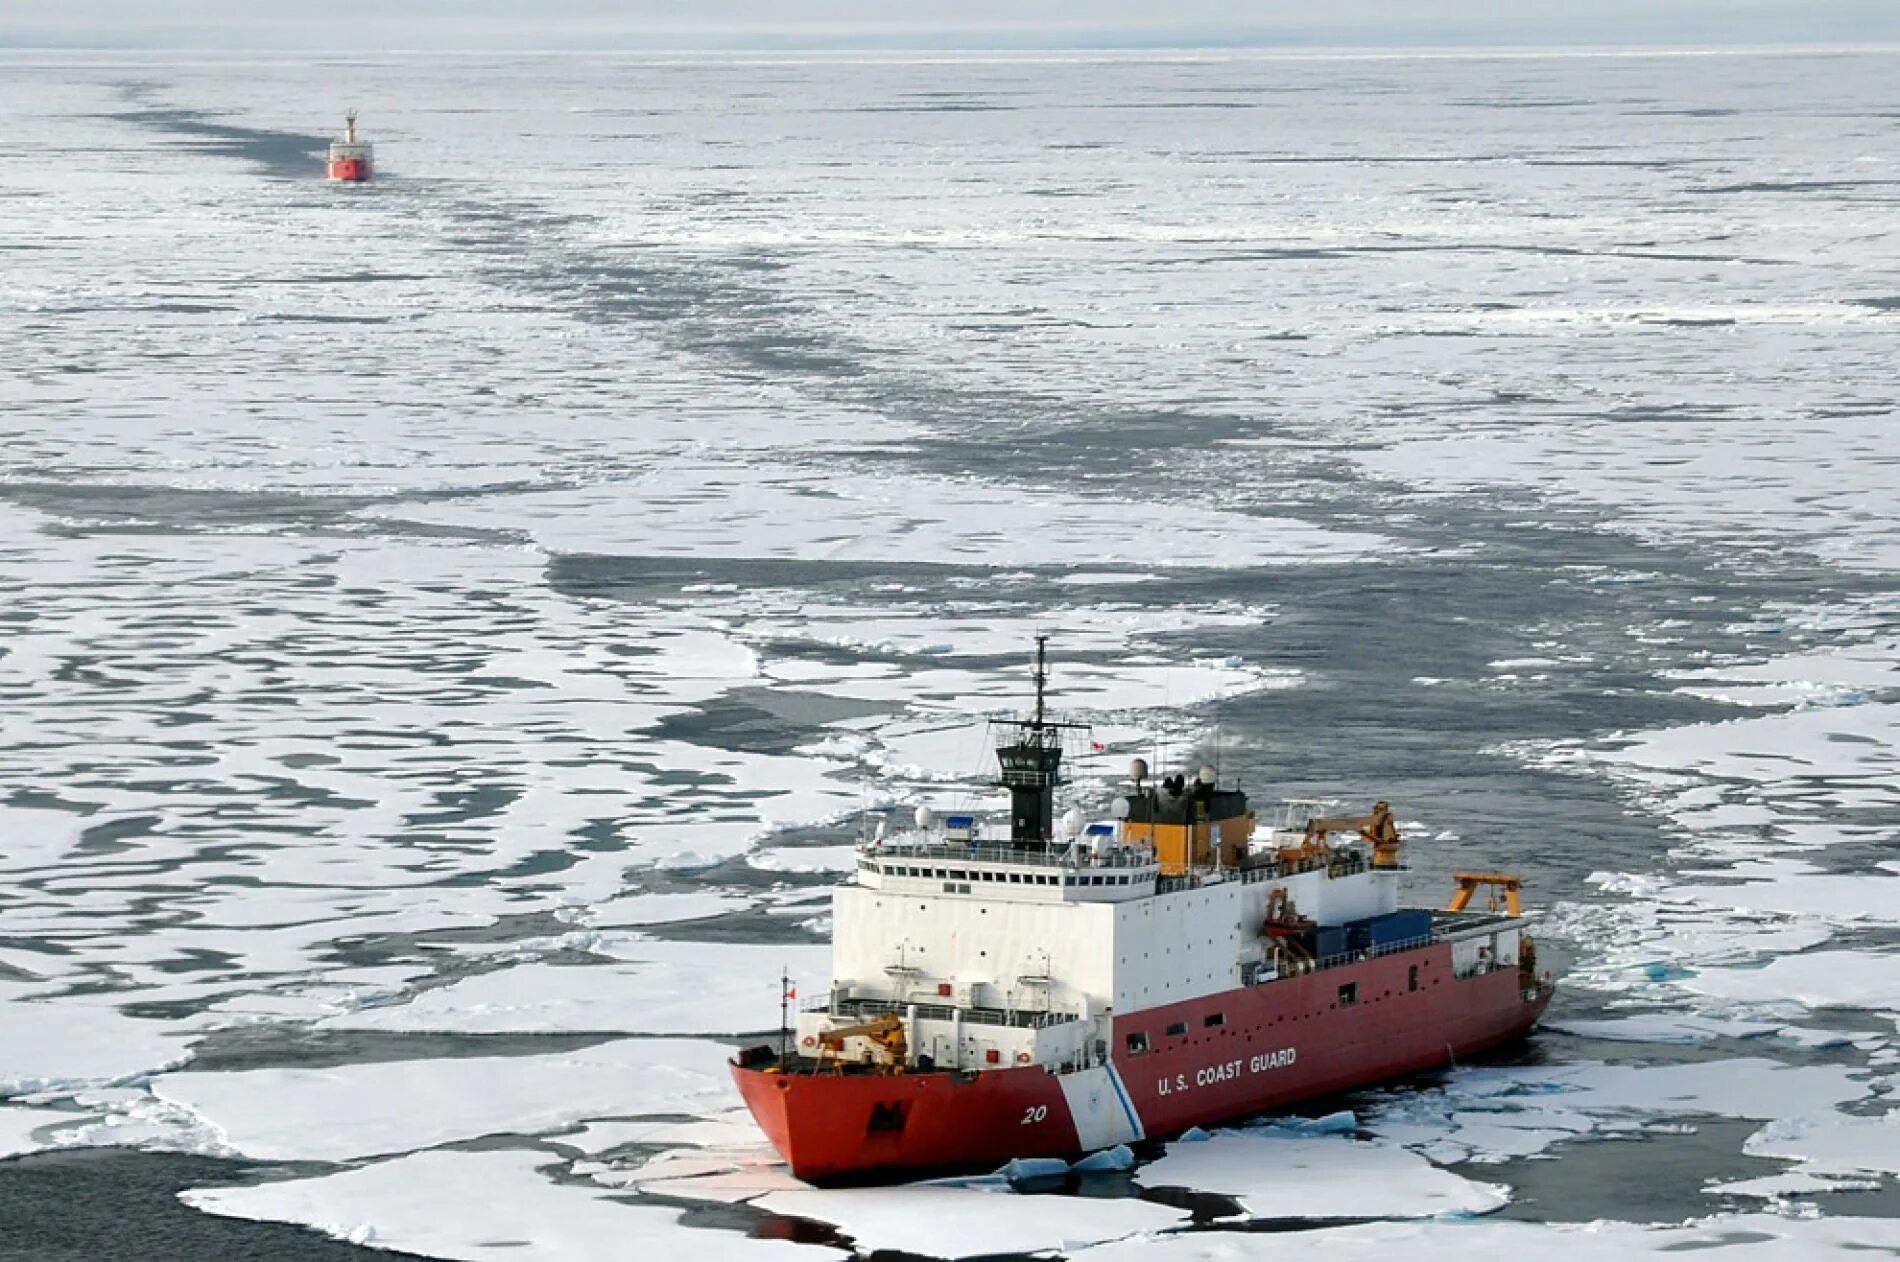 Караван судов. Северный Ледовитый океан ледокол. Северный морской путь Северный Ледовитый океан. Корабль Маннергейма в Арктике. Ледокол береговой охраны Healy.